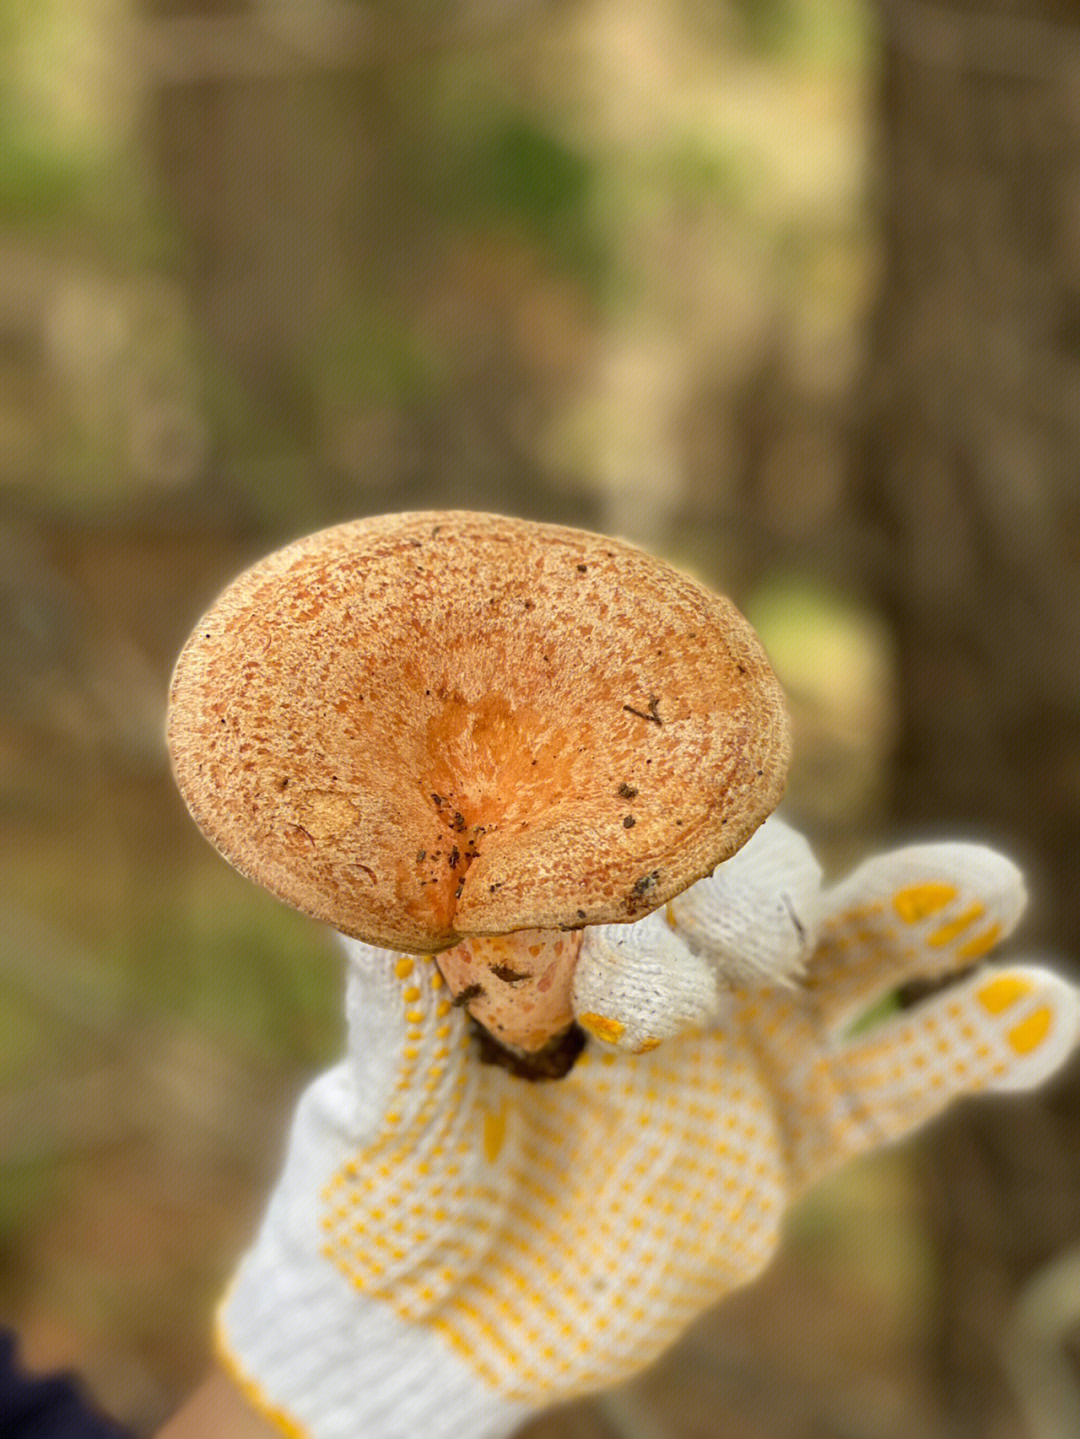 松树林可食野蘑菇图片图片